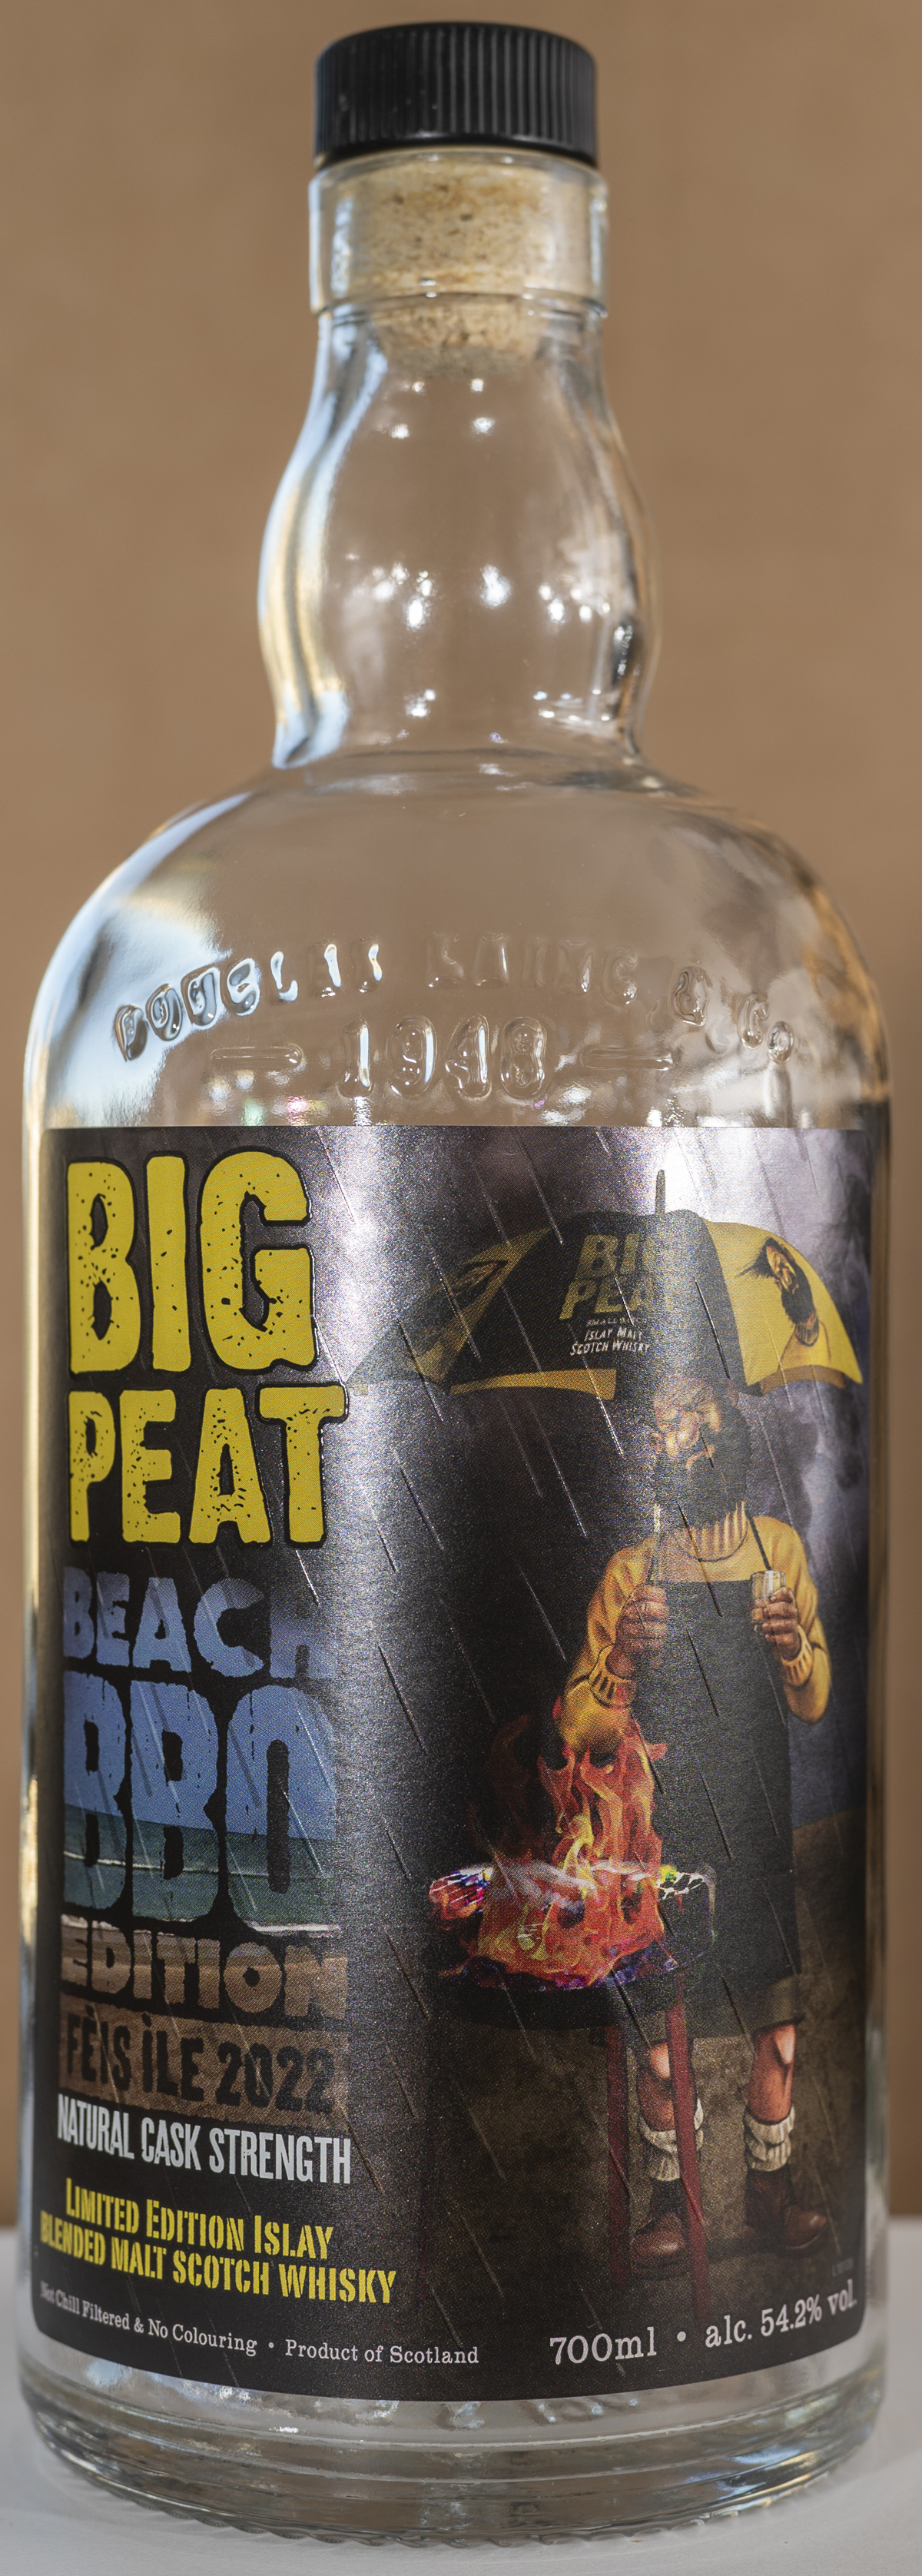 Billede: DSC_4441 - Big Feat BBQ Edition Feis Isle 2022 - bottle front.jpg